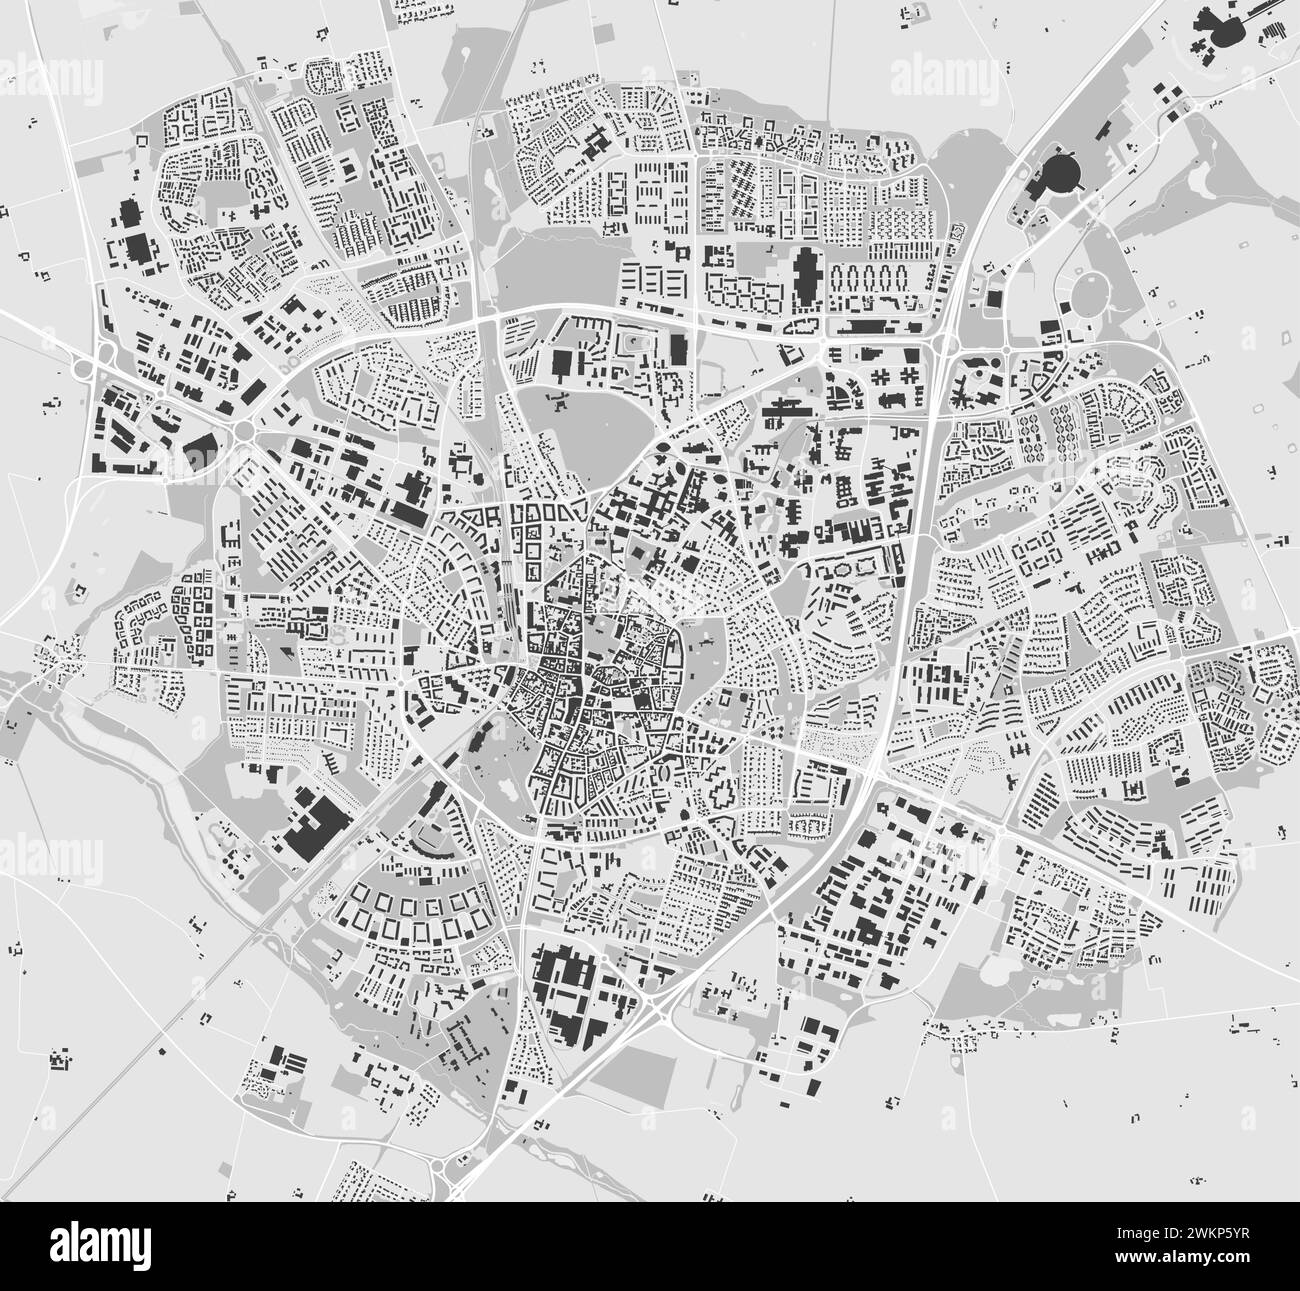 Mappa di Lund, Svezia. Mappa della città a colori in scala di grigi, mappa vettoriale con strade e fiumi. Illustrazione Vettoriale